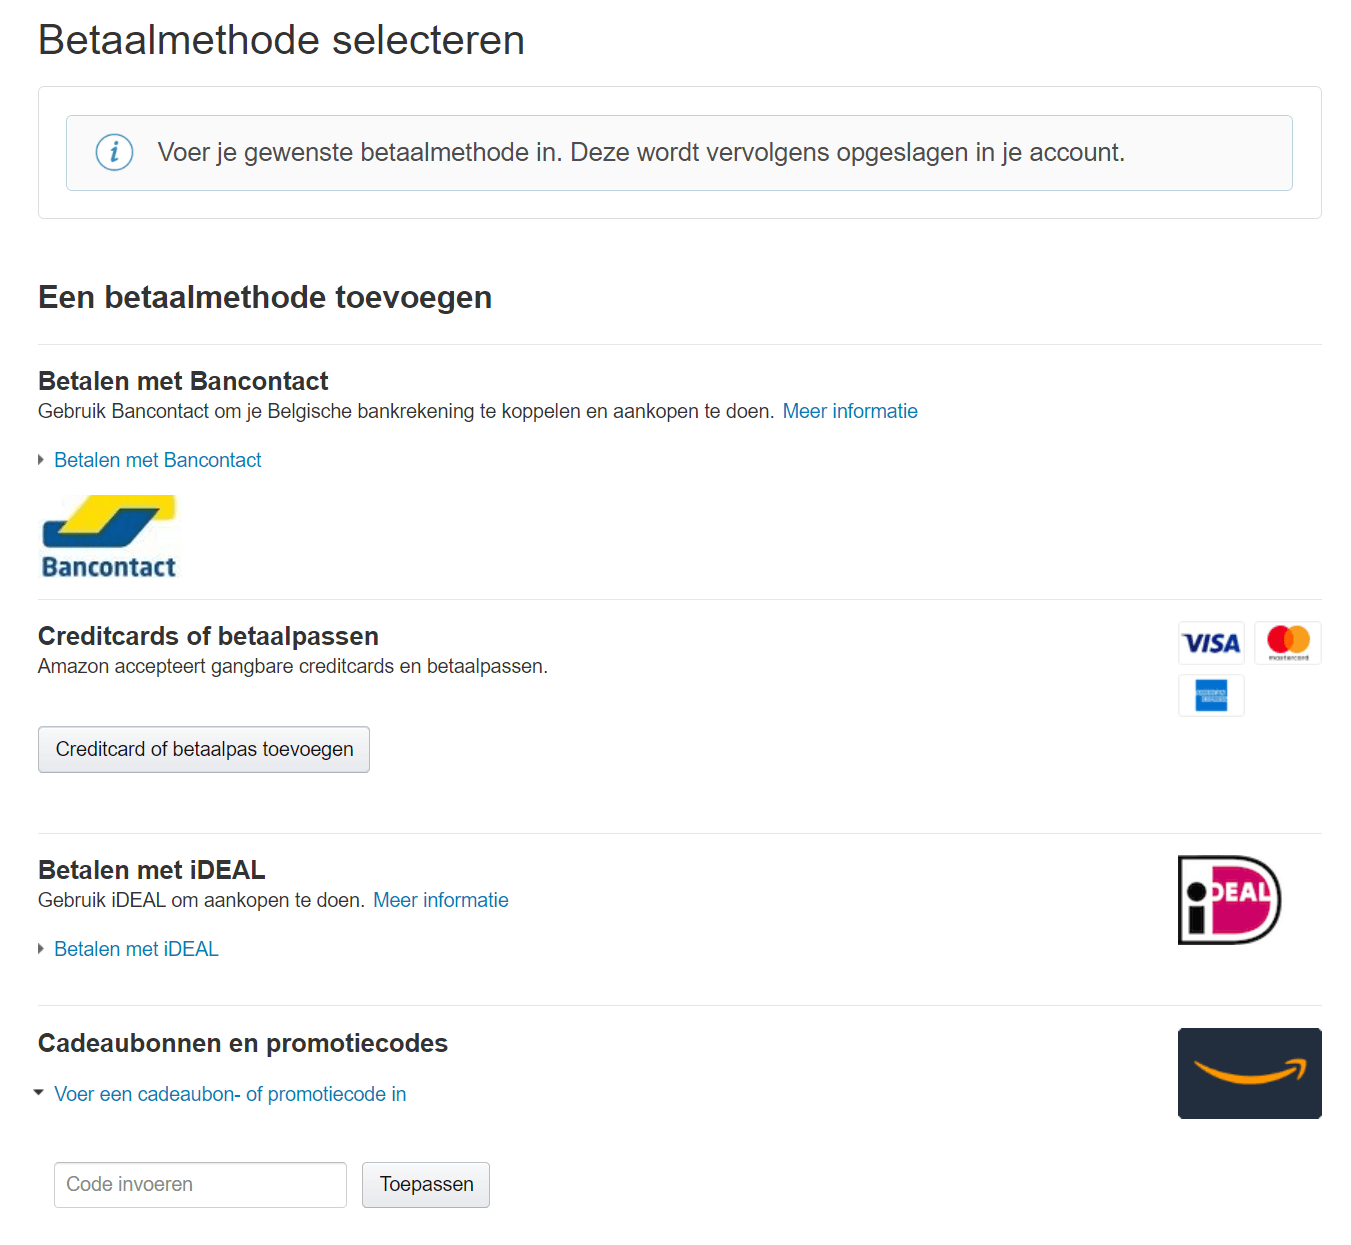 Amazon kortingscode verzilveren